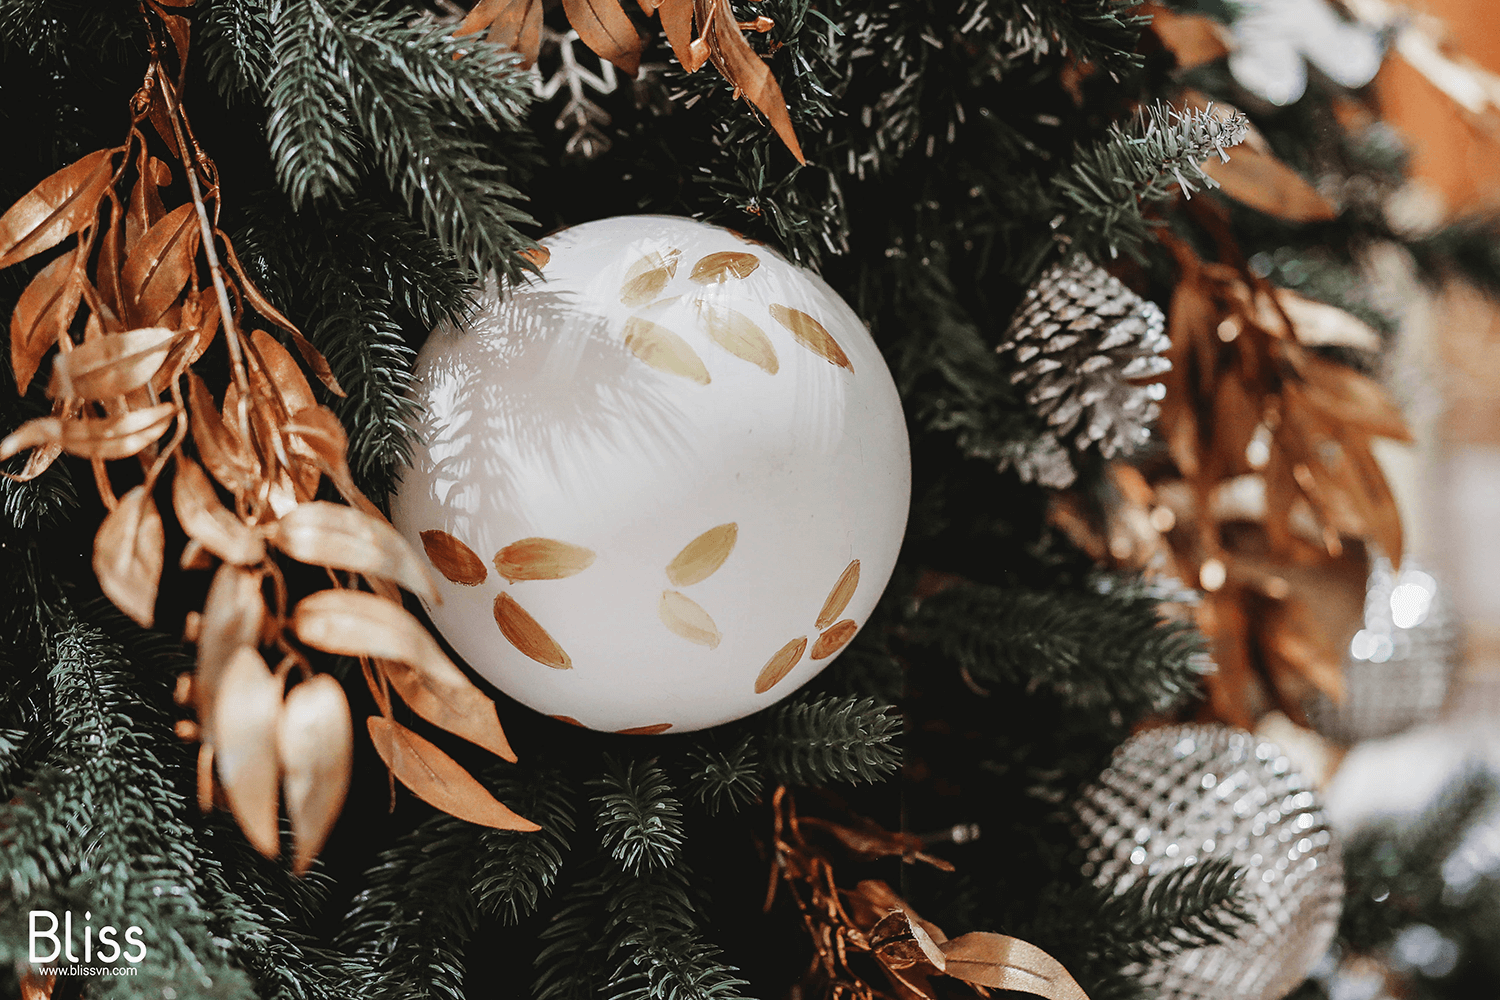 Không gian Giáng sinh tràn ngập trong sắc vàng ánh kim của Champagne, cùng những trang trí lung linh. Hãy thưởng thức hình ảnh Trang trí Giáng sinh này để cảm nhận được không khí tuyệt vời của đêm Noel.